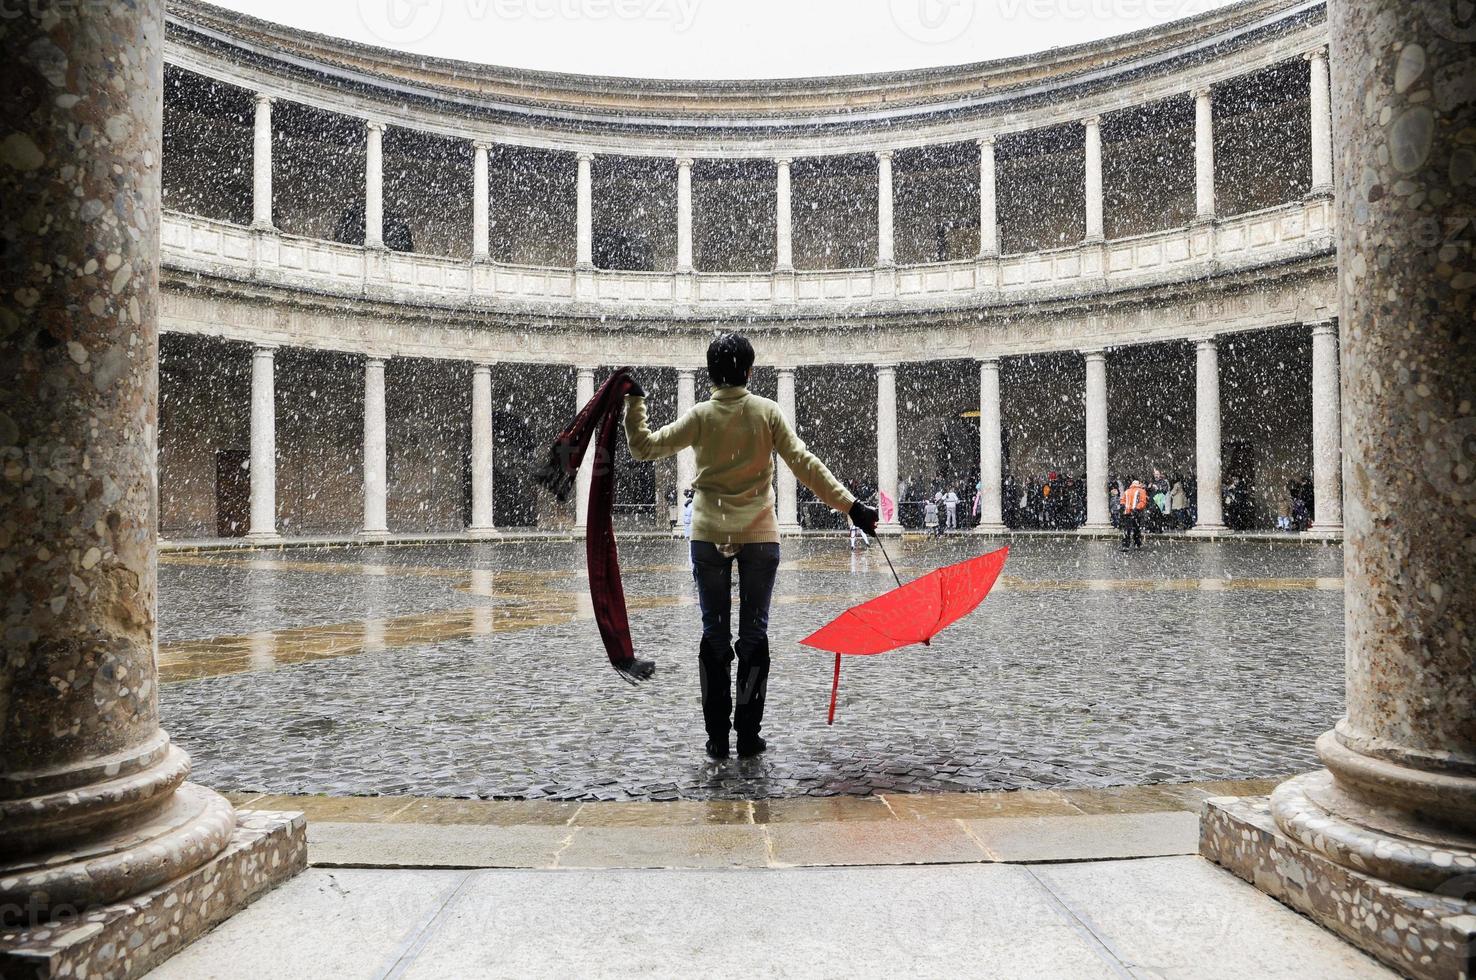 il neige sur une femme avec un parapluie rouge dans un palais photo